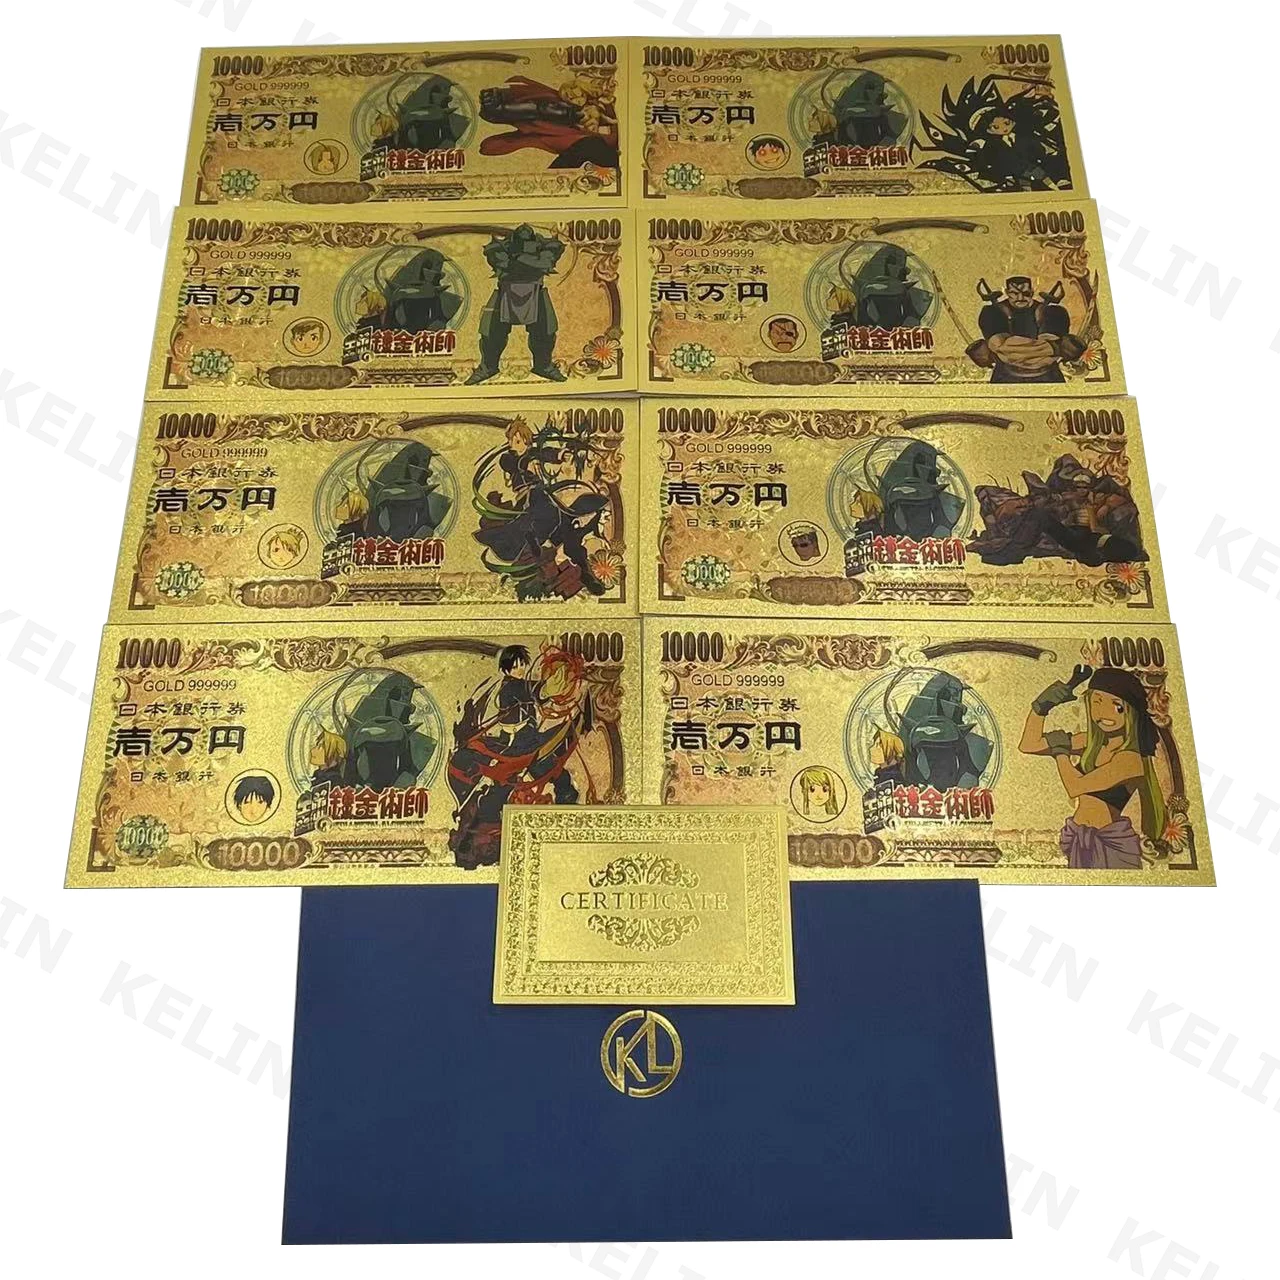 

Kelin у нас есть больше манга японский Классический Аниме цельнометаллический Алхимик 10000 иен банкнота золотая для детства коллекция памяти